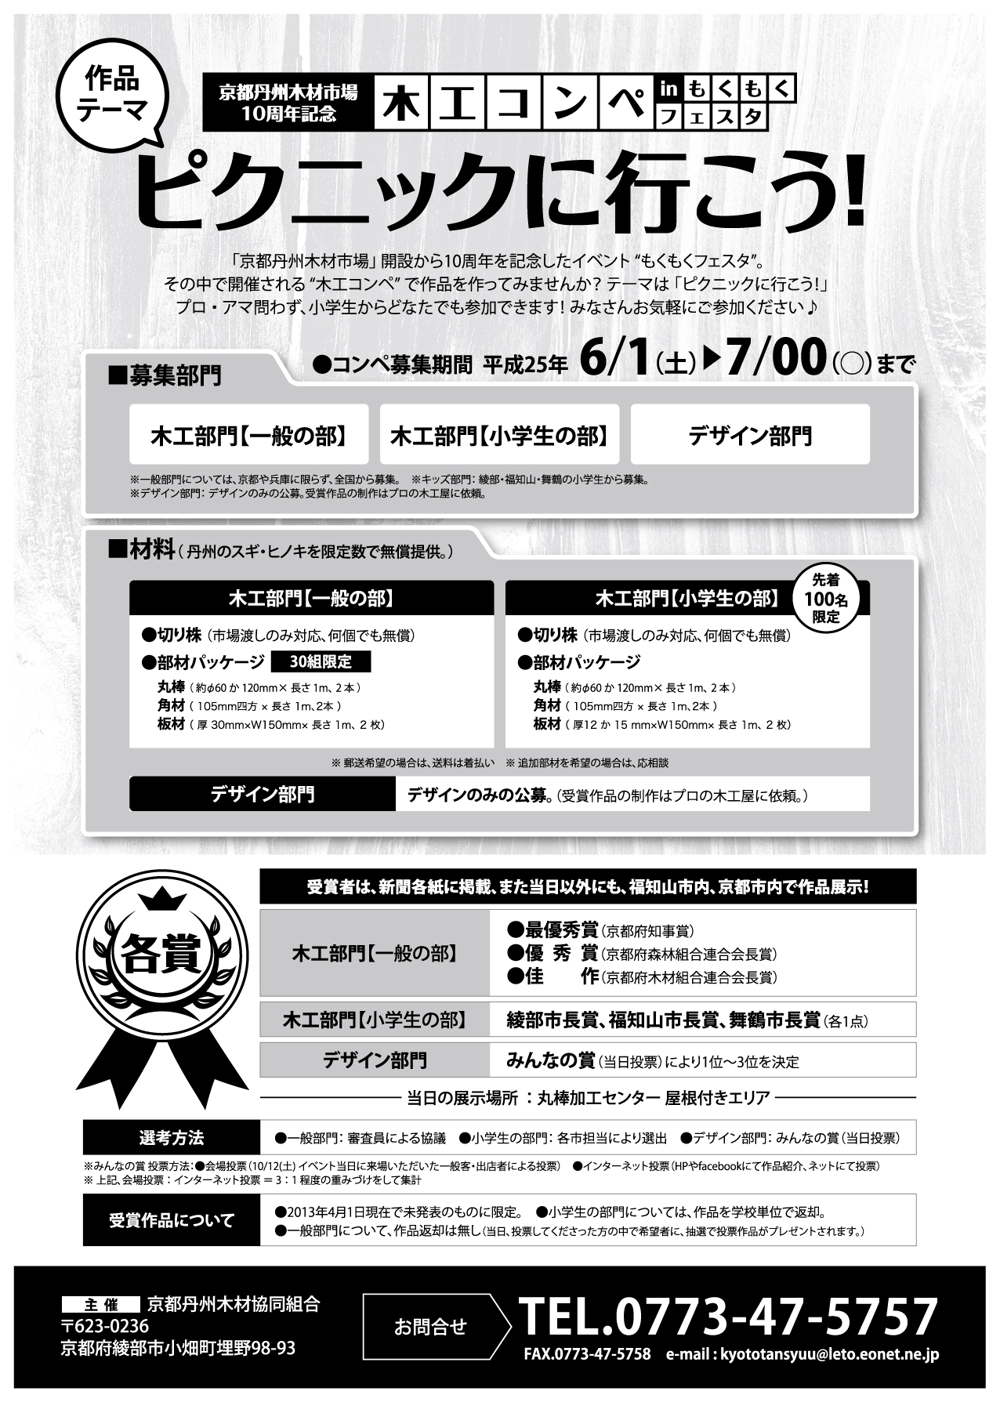 京都の木材市場の記念イベントの「木工コンペ」告知・作品募集チラシの制作